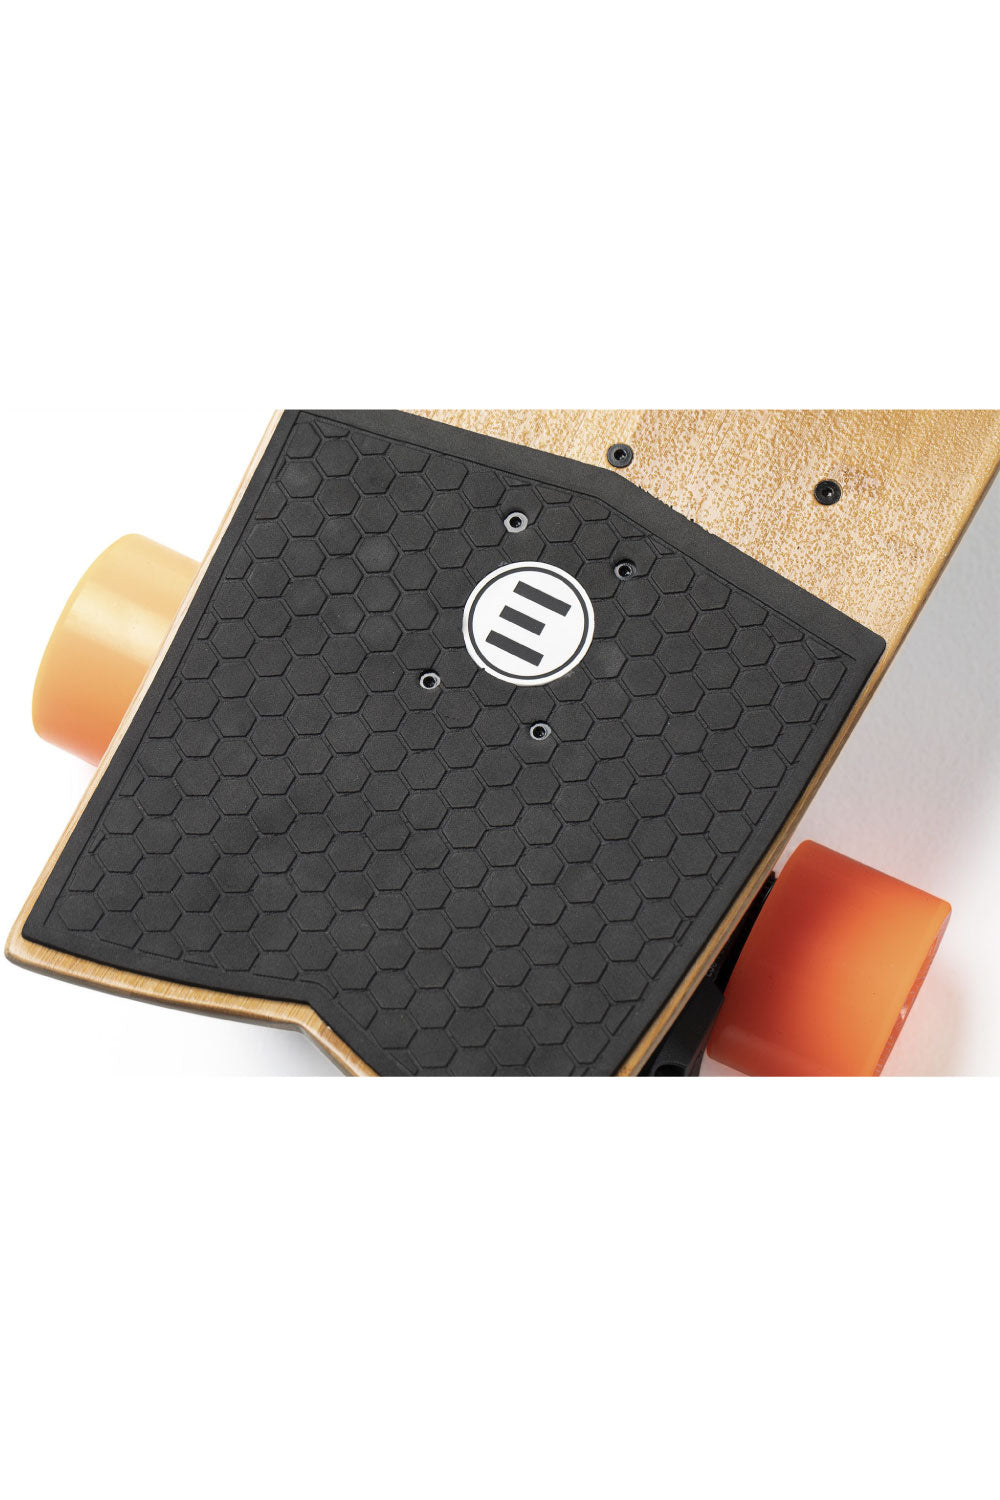 Evolve STOKE Electric Skateboard